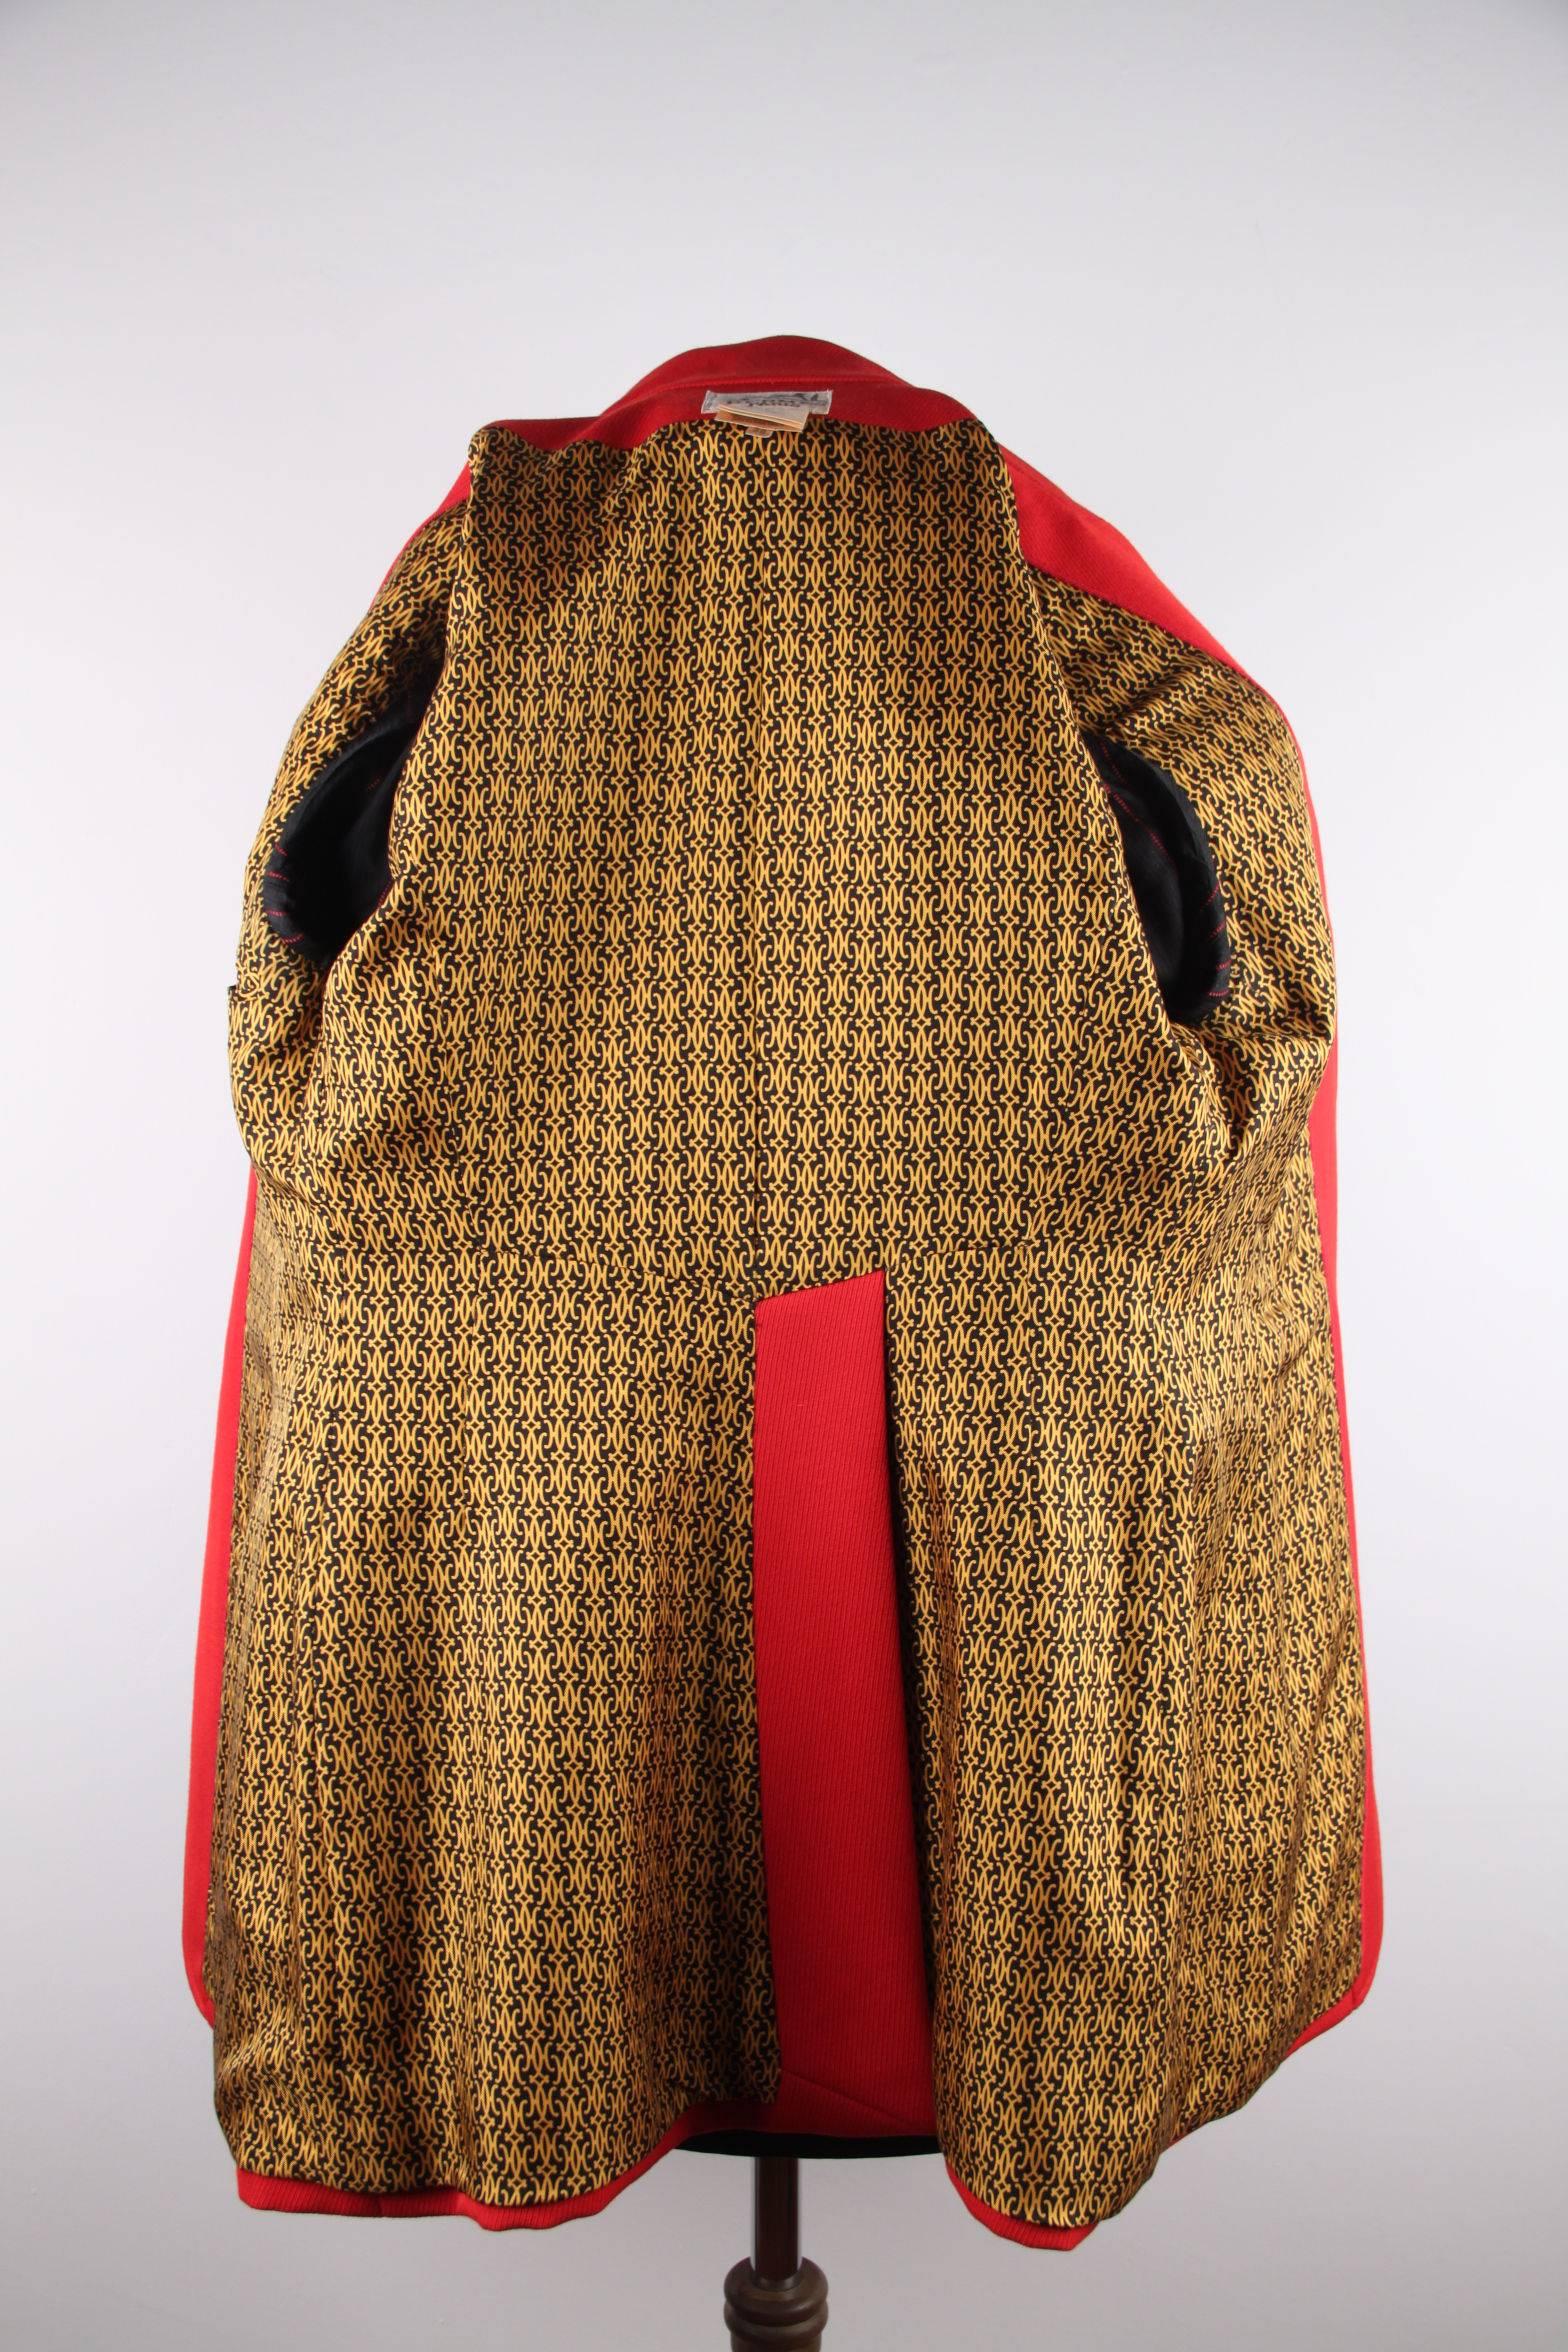 HERMES PARIS Vintage Red Wool BLAZER Long Line Jacket SIZE 38 FR 2